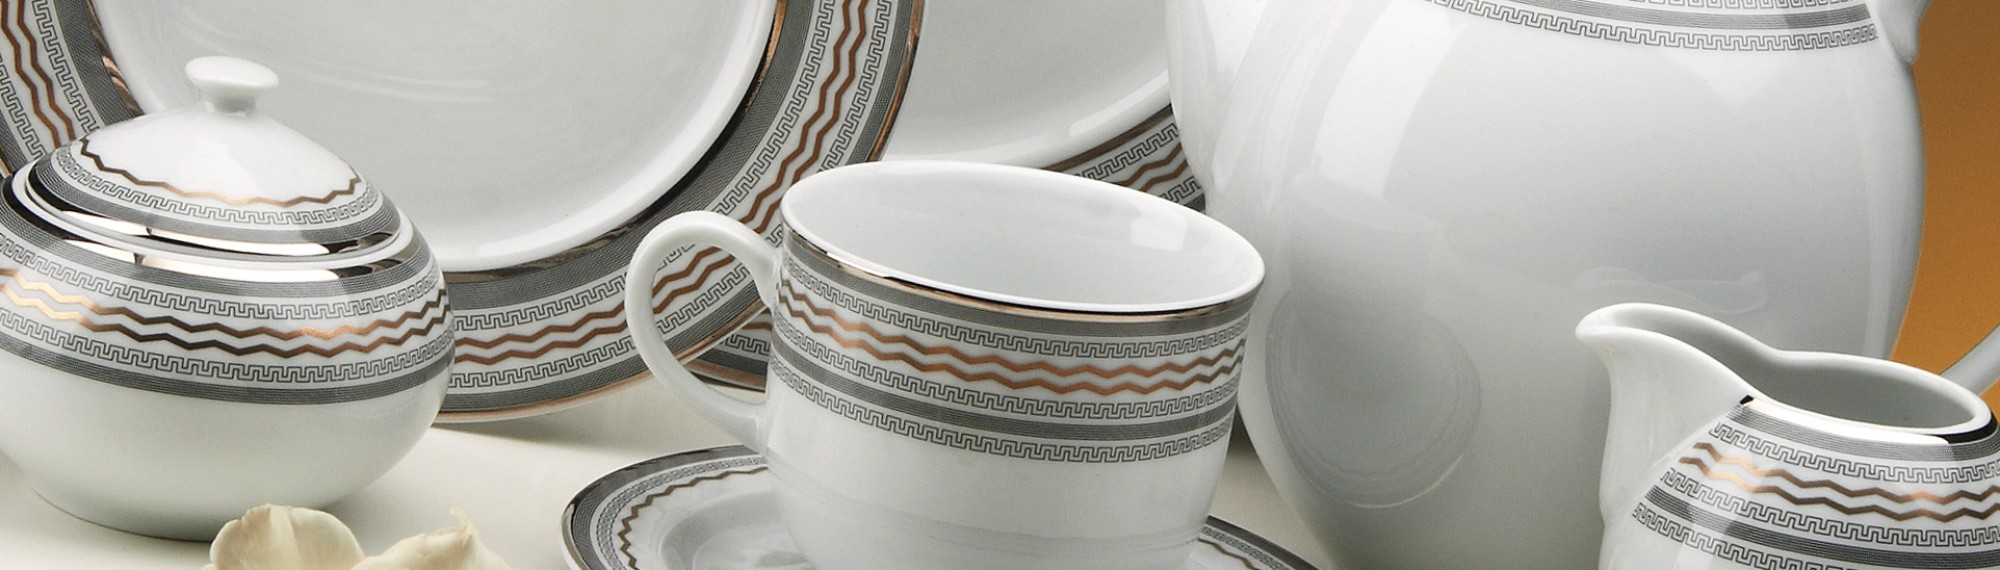 karlovarský porcelán